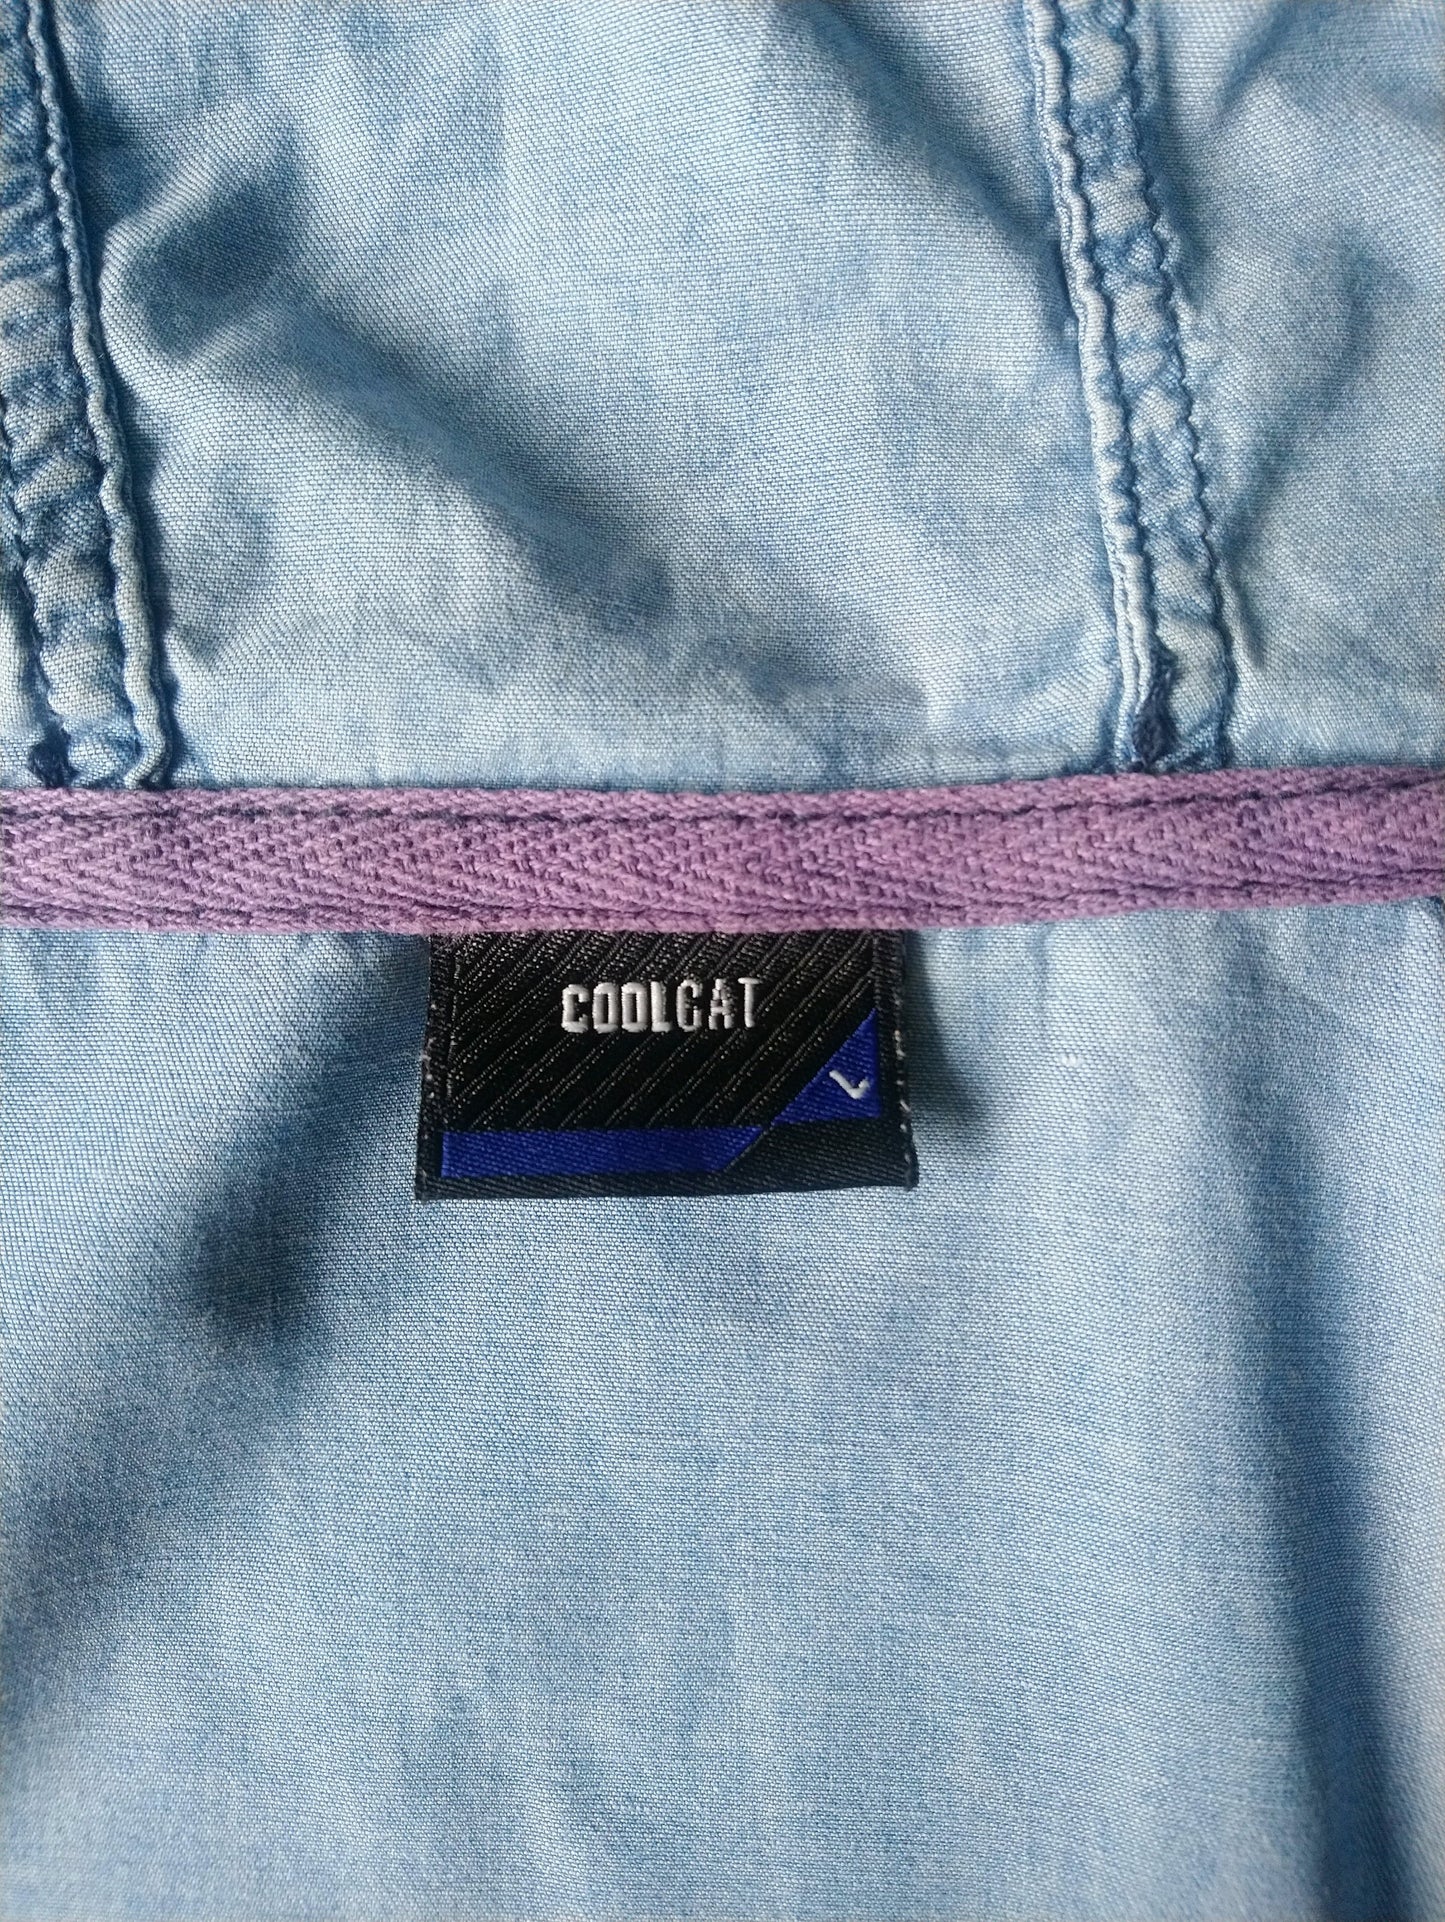 Coolcat overhemd met capuchon. Blauwe spijkerstof. Maat L.